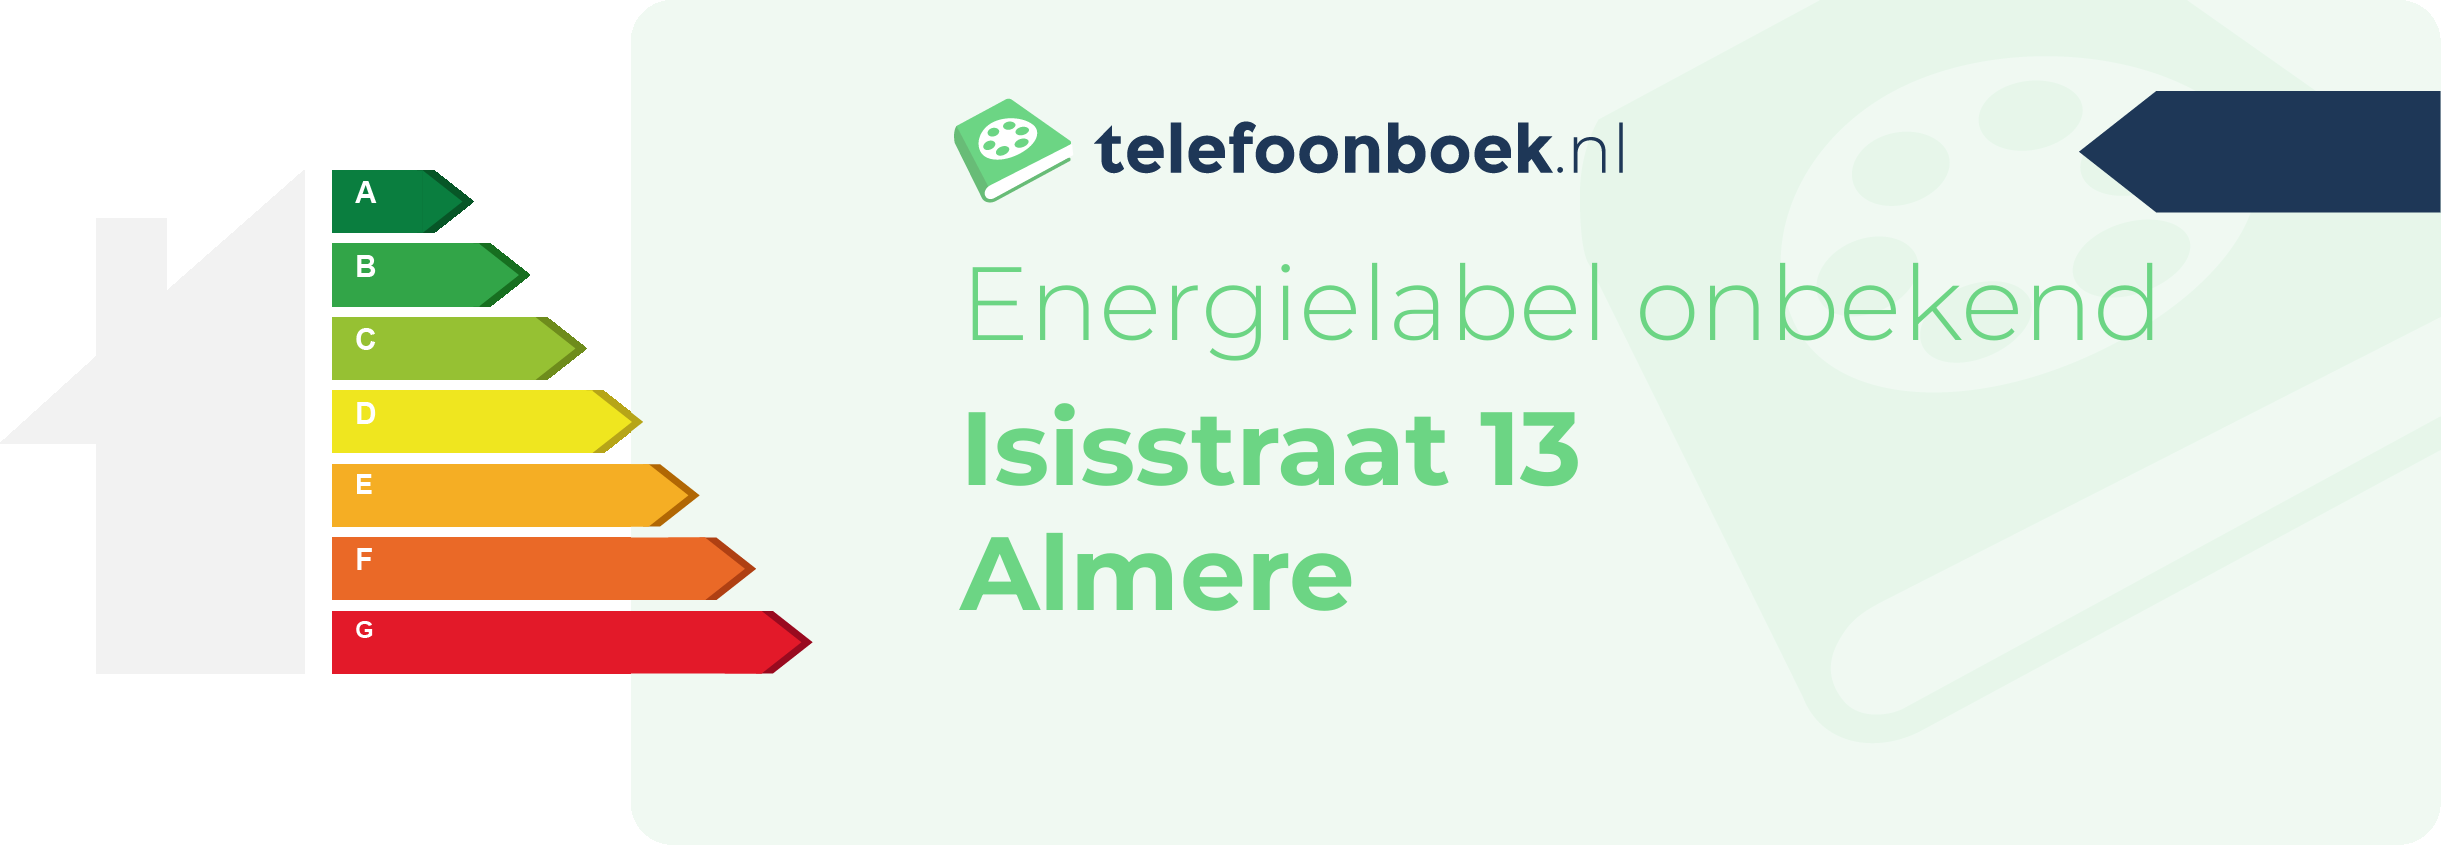 Energielabel Isisstraat 13 Almere